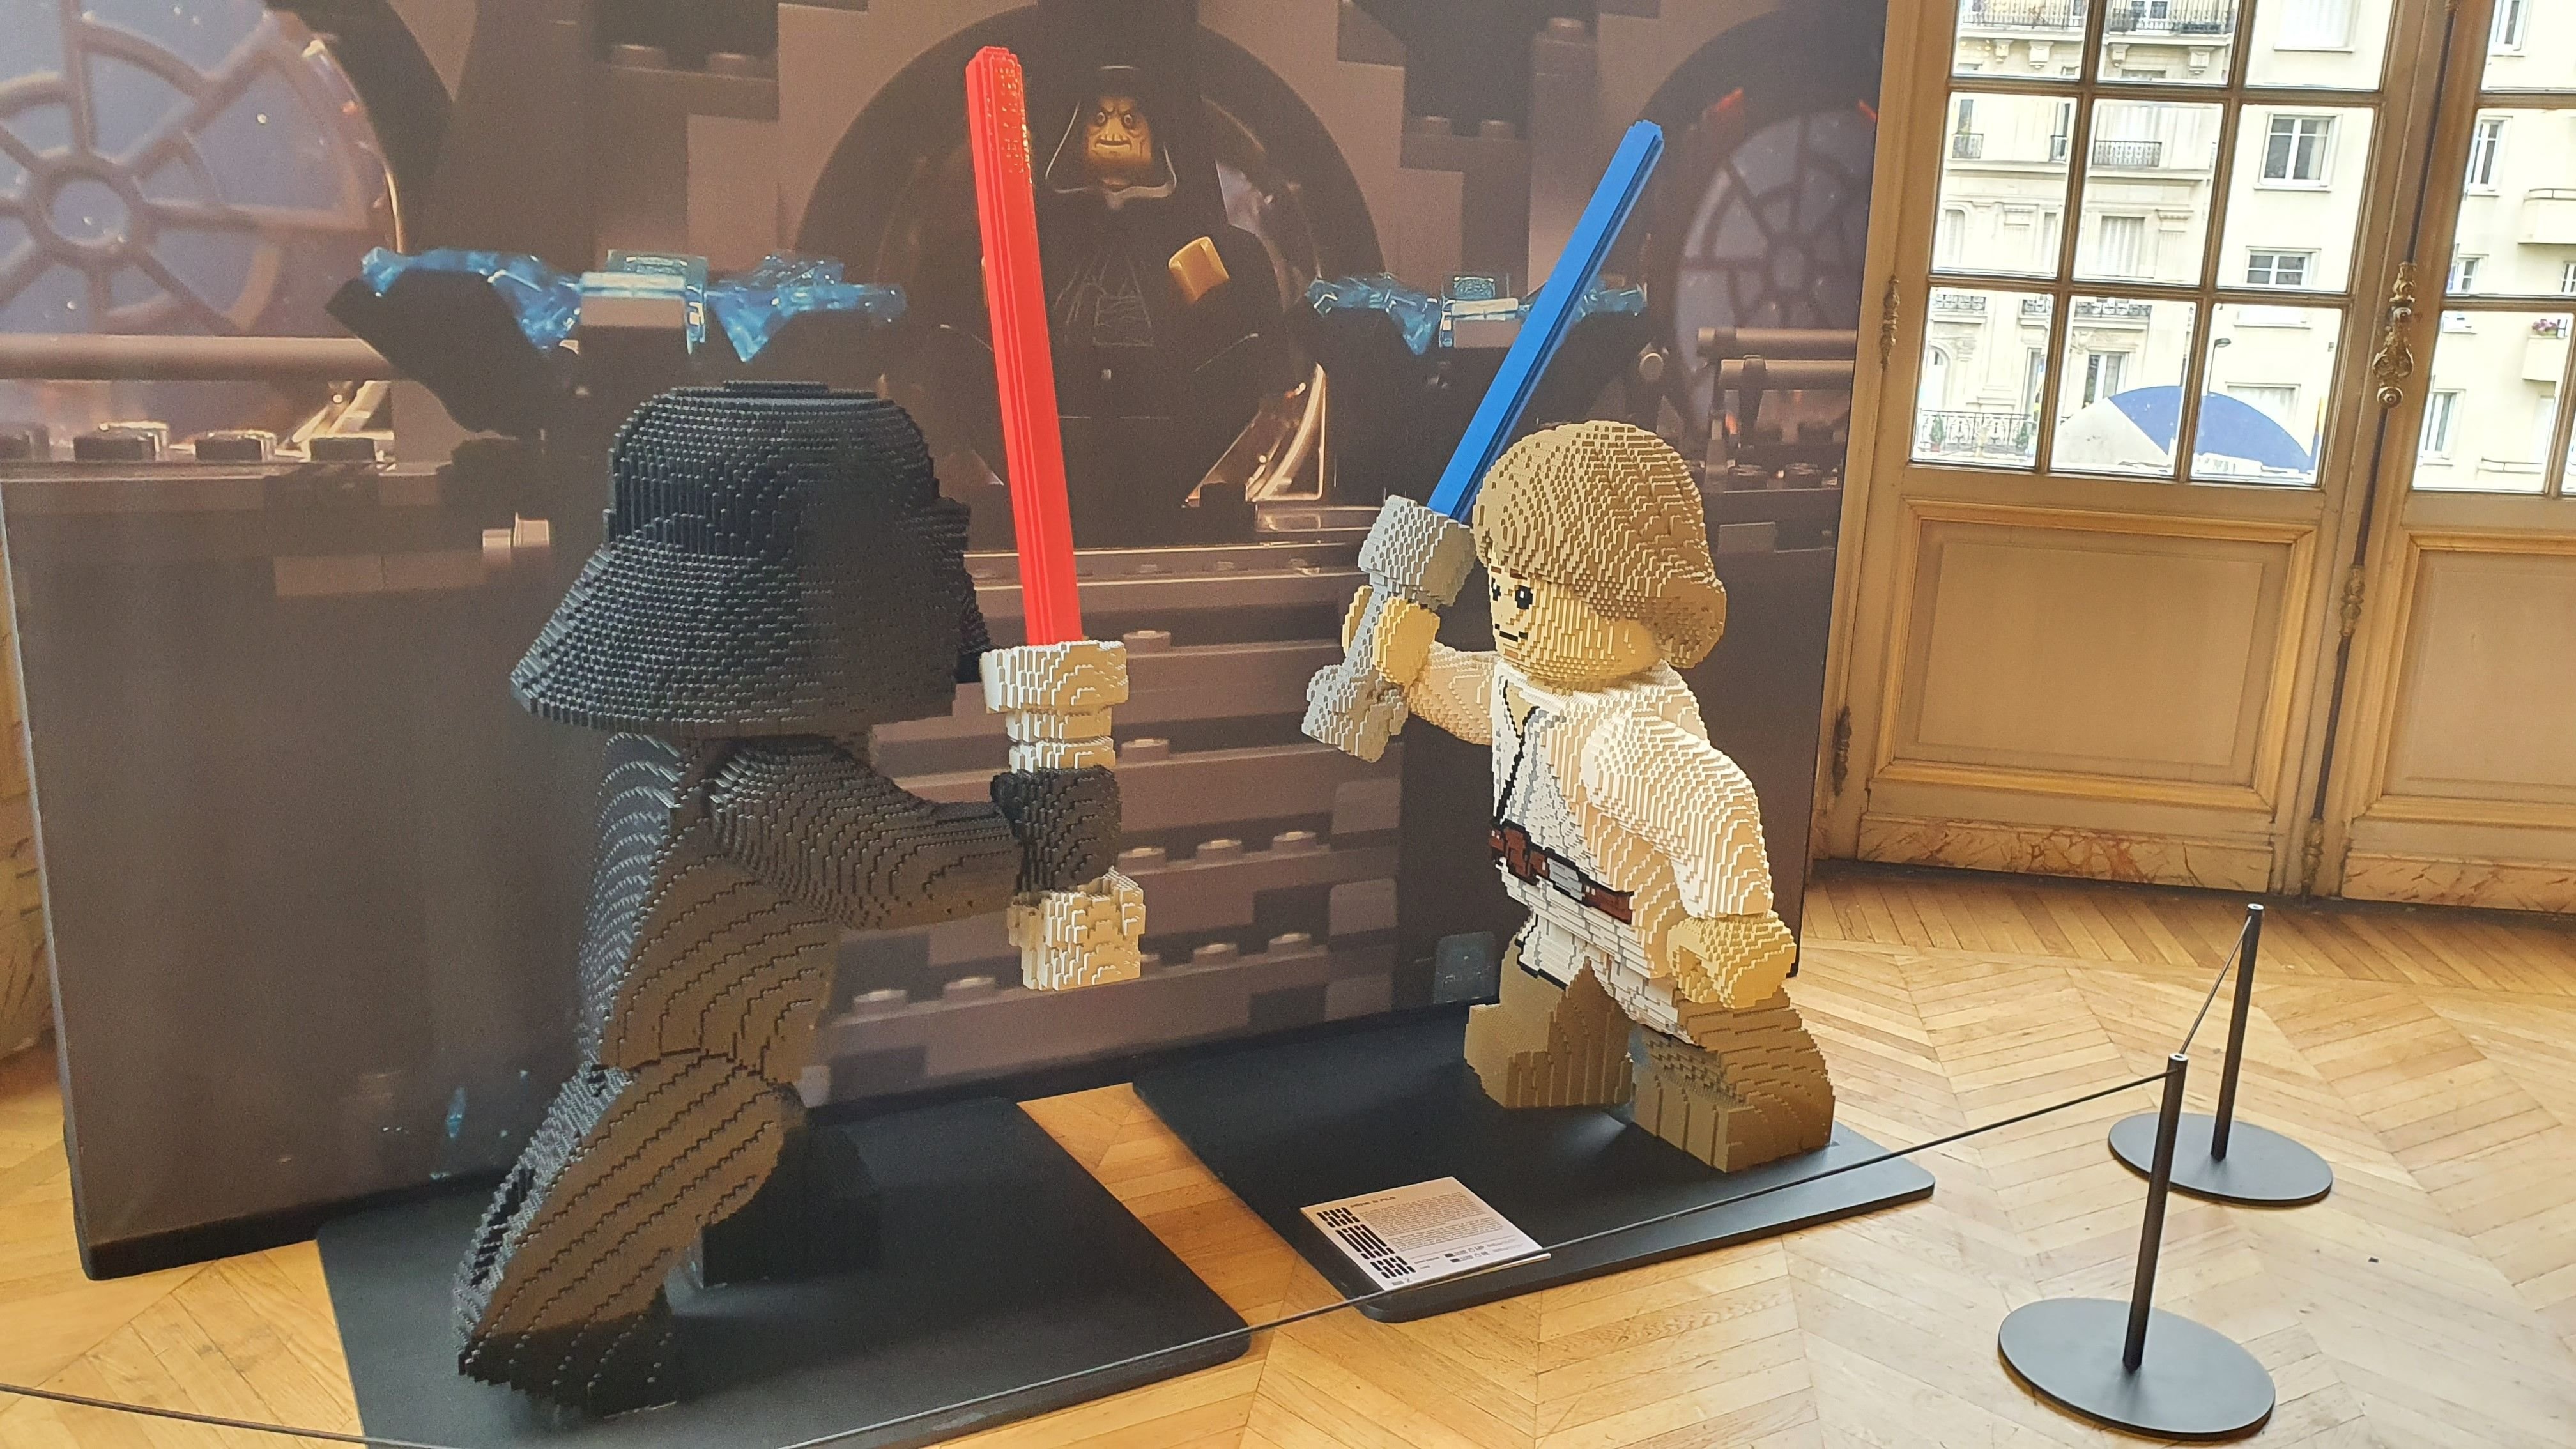 Levallois, le 20 août. L'hôtel de ville présente une exposition Lego Star Wars jusqu'au 19 septembre. Ici Dark Vador et Luke Skywalker. LP/Anne-Sophie Damecour